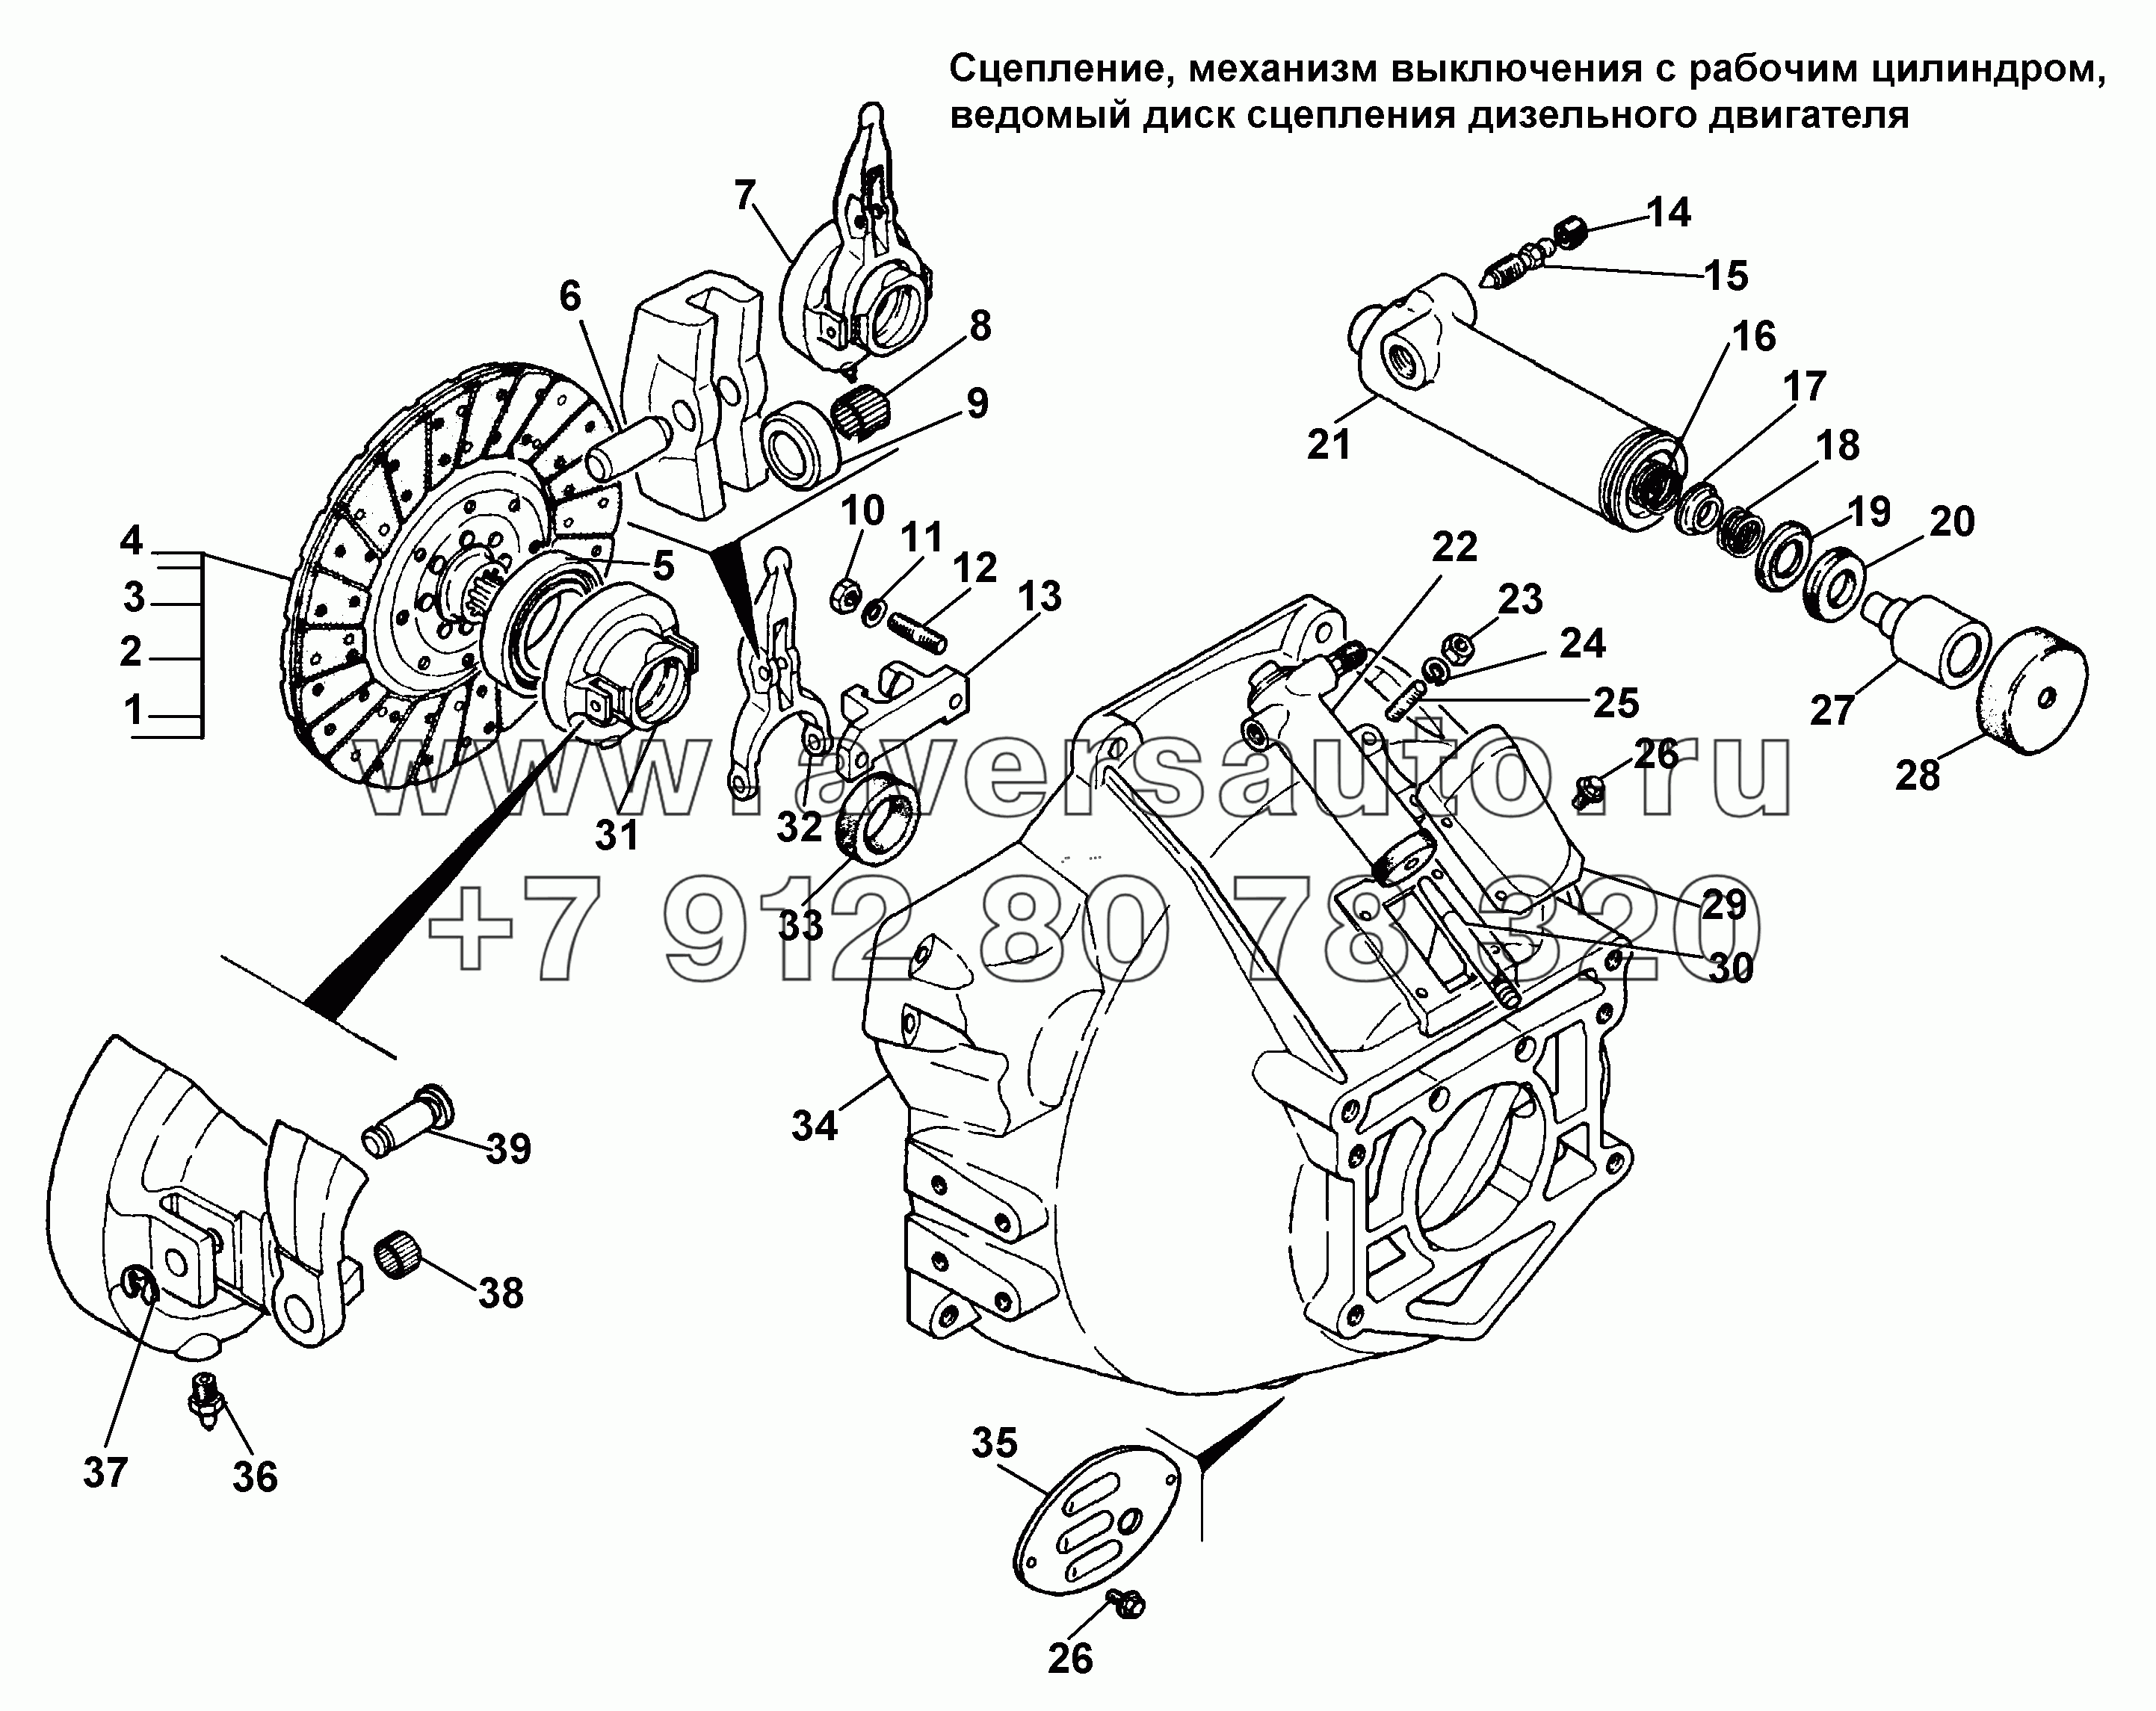 Сцепление, механизм выключения с рабочим цилиндром, ведомый диск сцепления дизельного двигателя